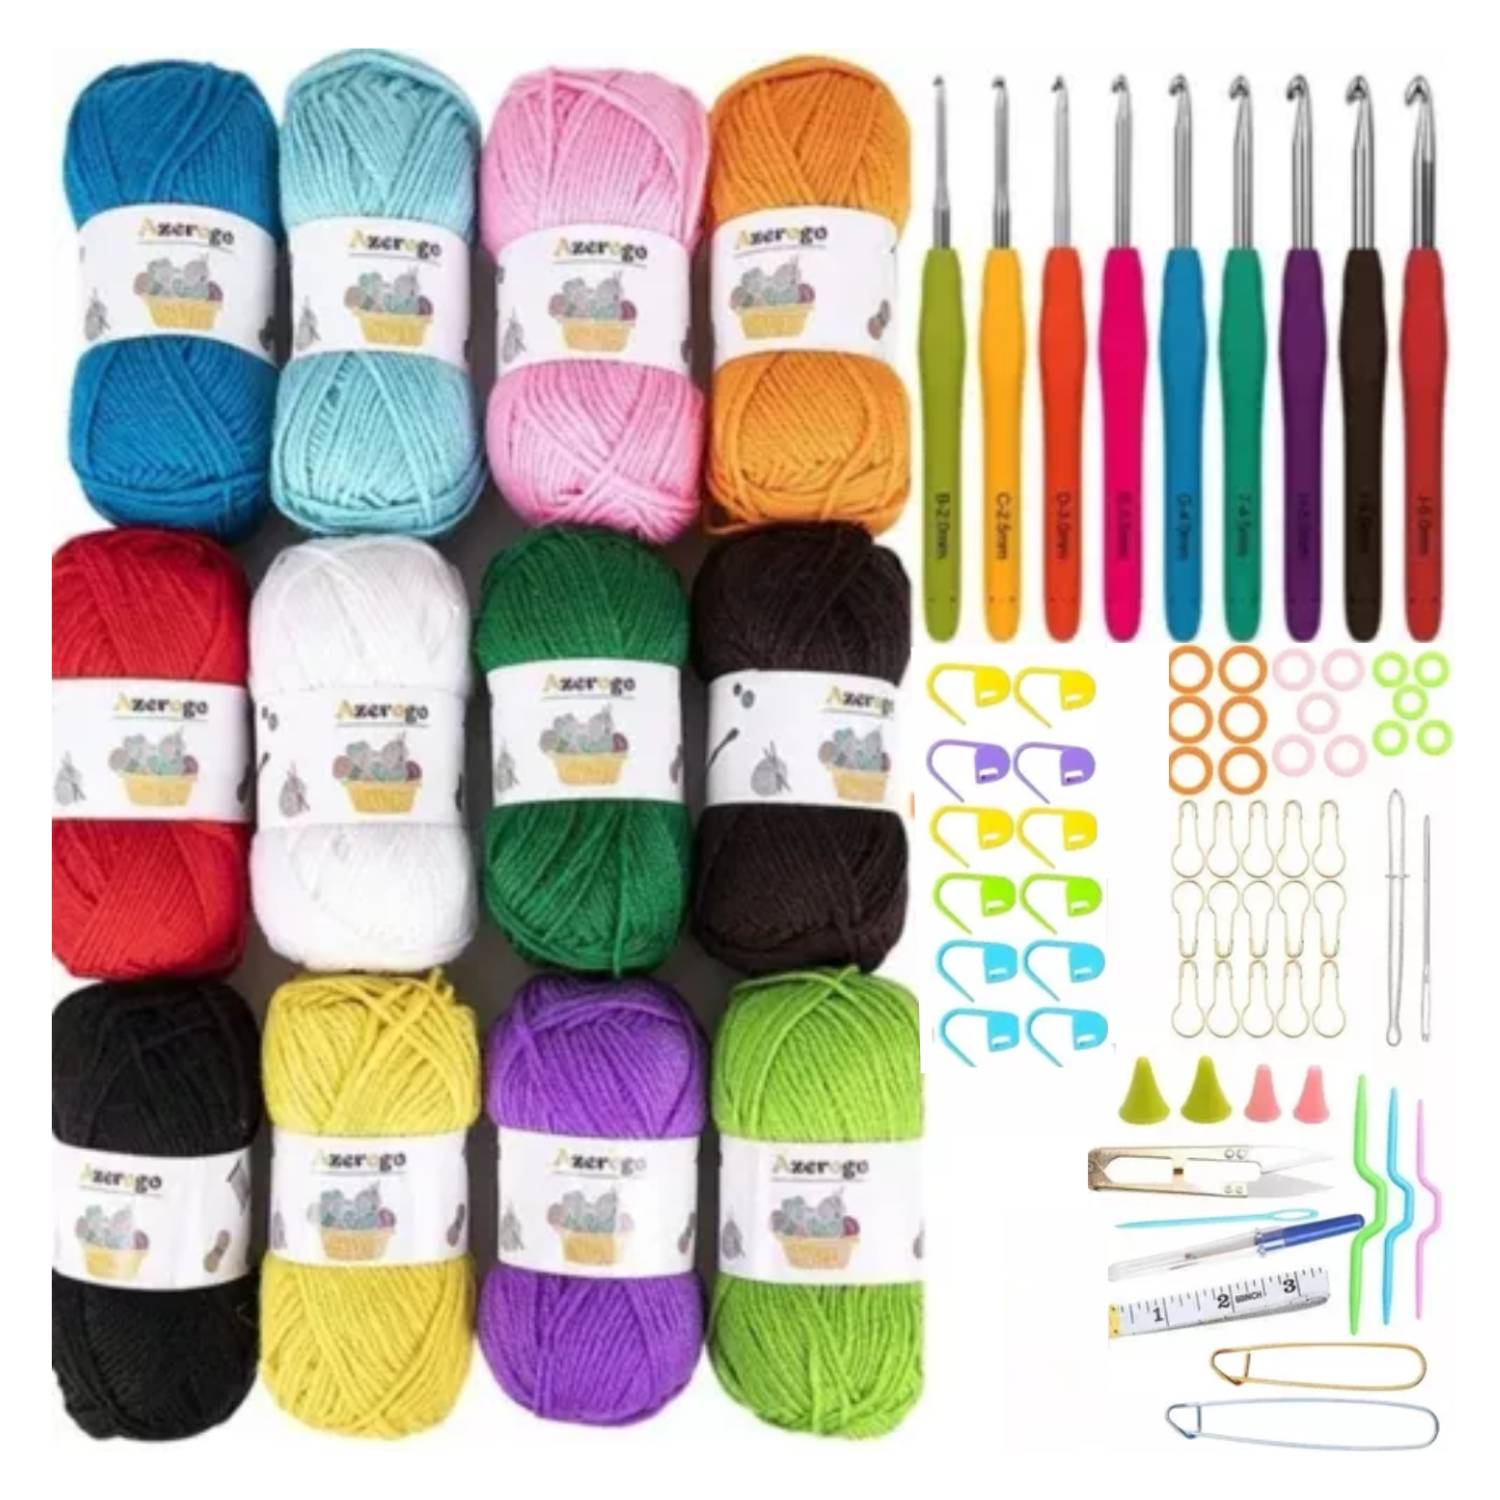 Proyectos en Crochet - Tipos de lanas e hilos para #Crochet